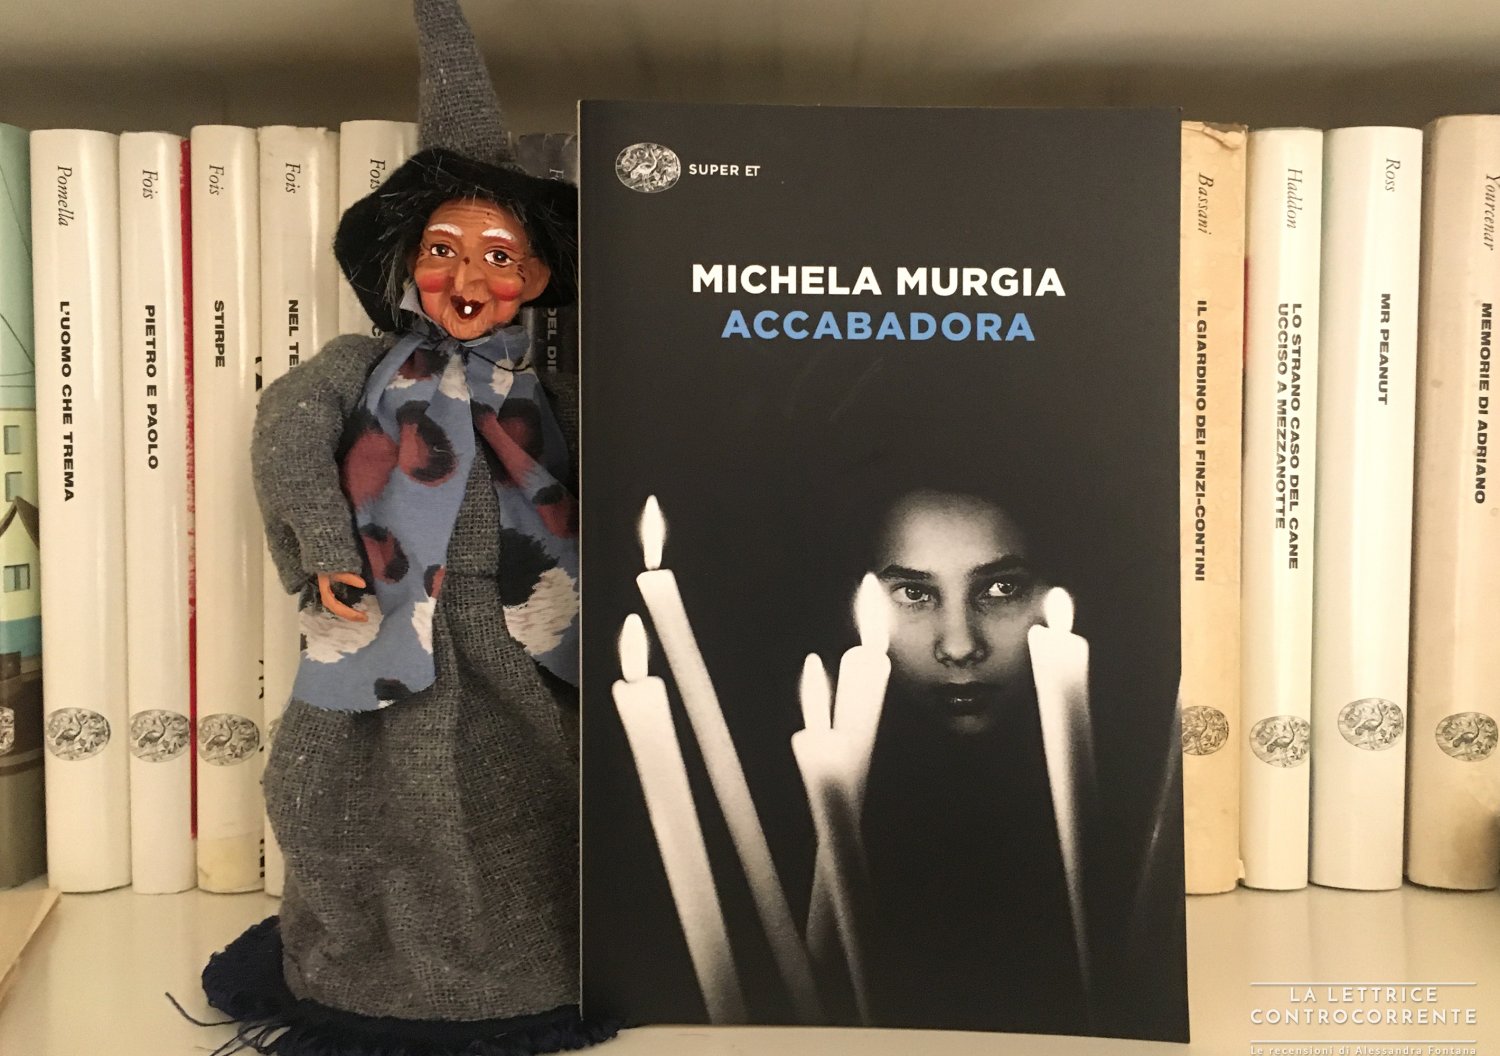 RECENSIONE: Accabadora (Michela Murgia) - La lettrice controcorrente